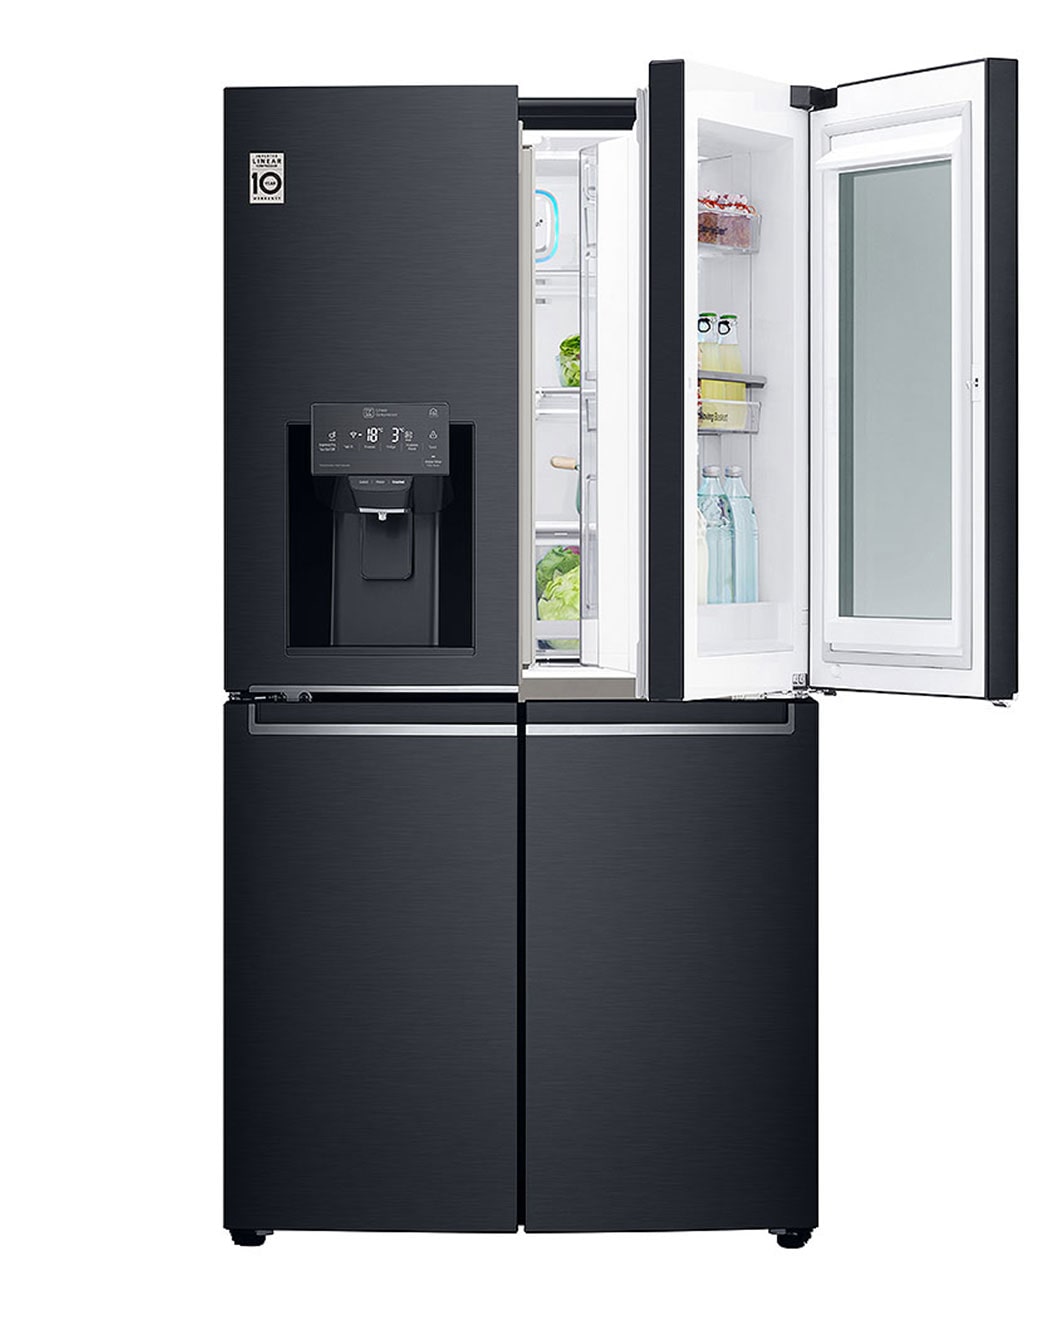 Réfrigérateur 2 Portes - Getleaz